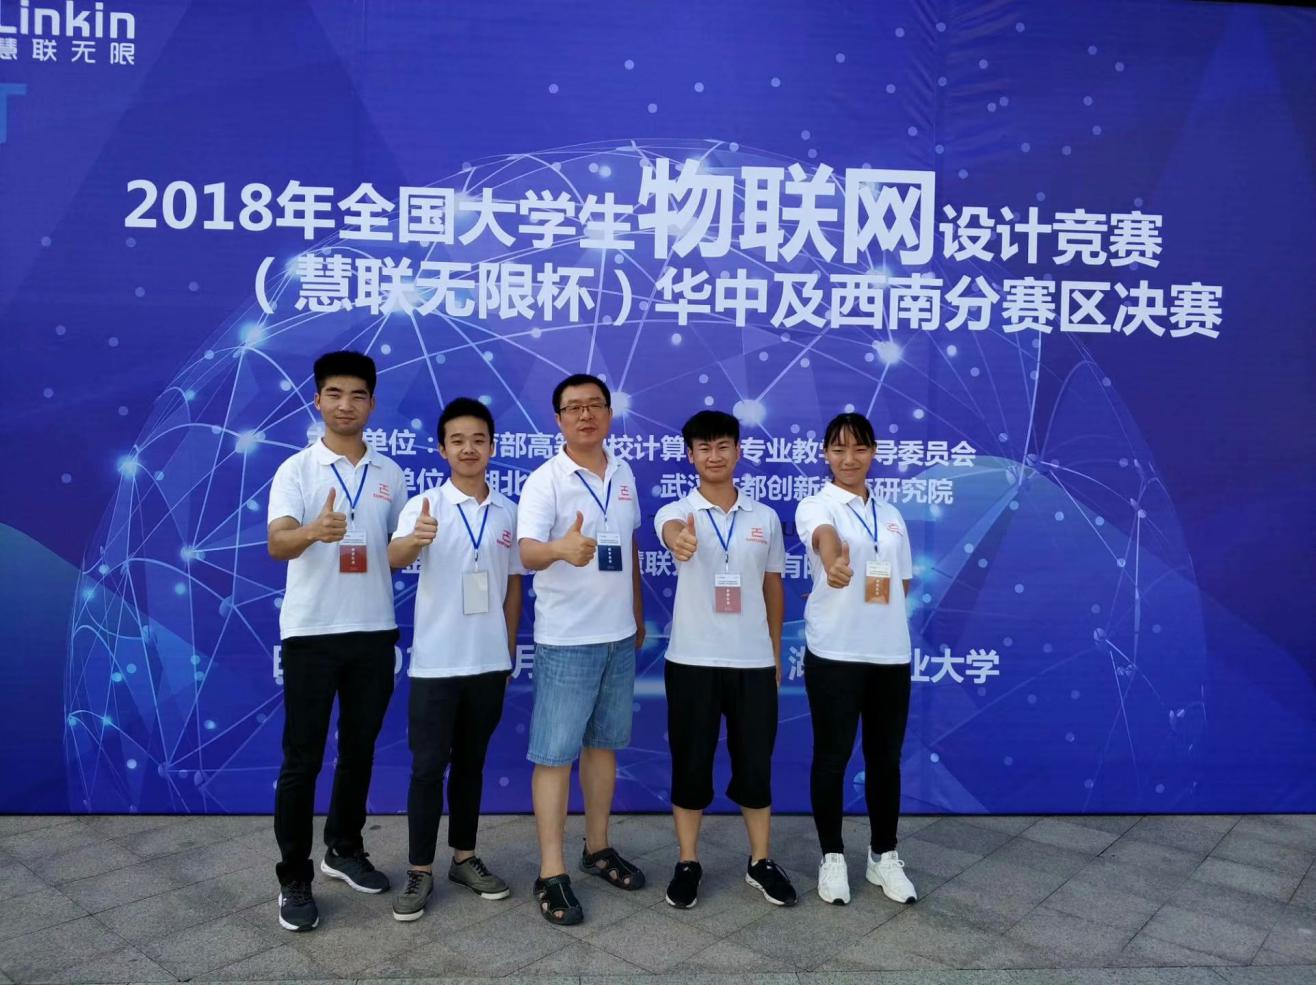 重庆工程学院在2018全国大学生物联网设计竞